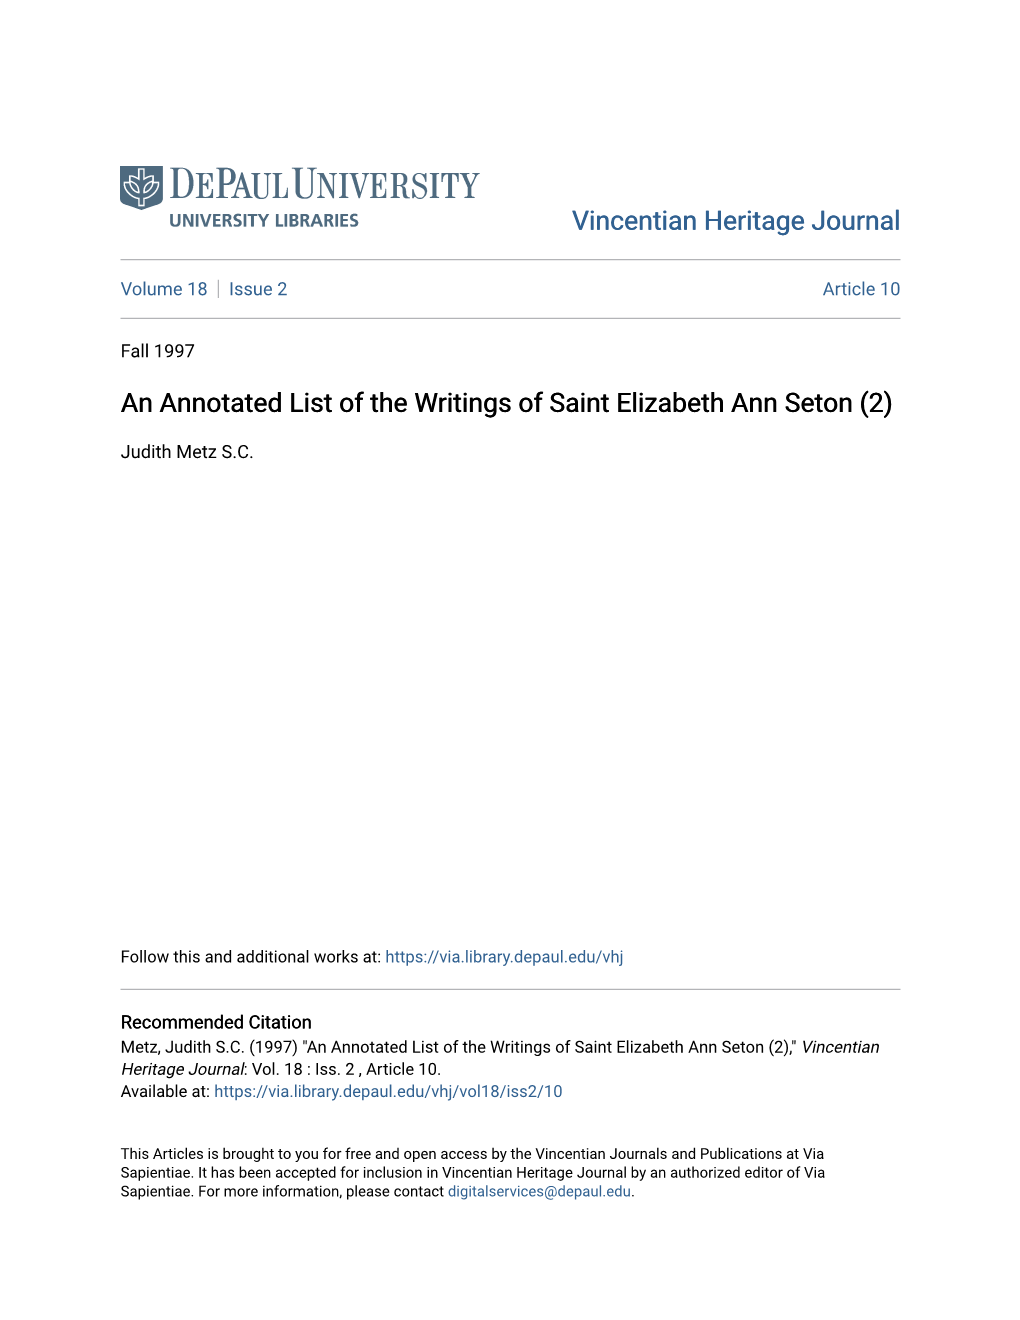 An Annotated List of the Writings of Saint Elizabeth Ann Seton (2)